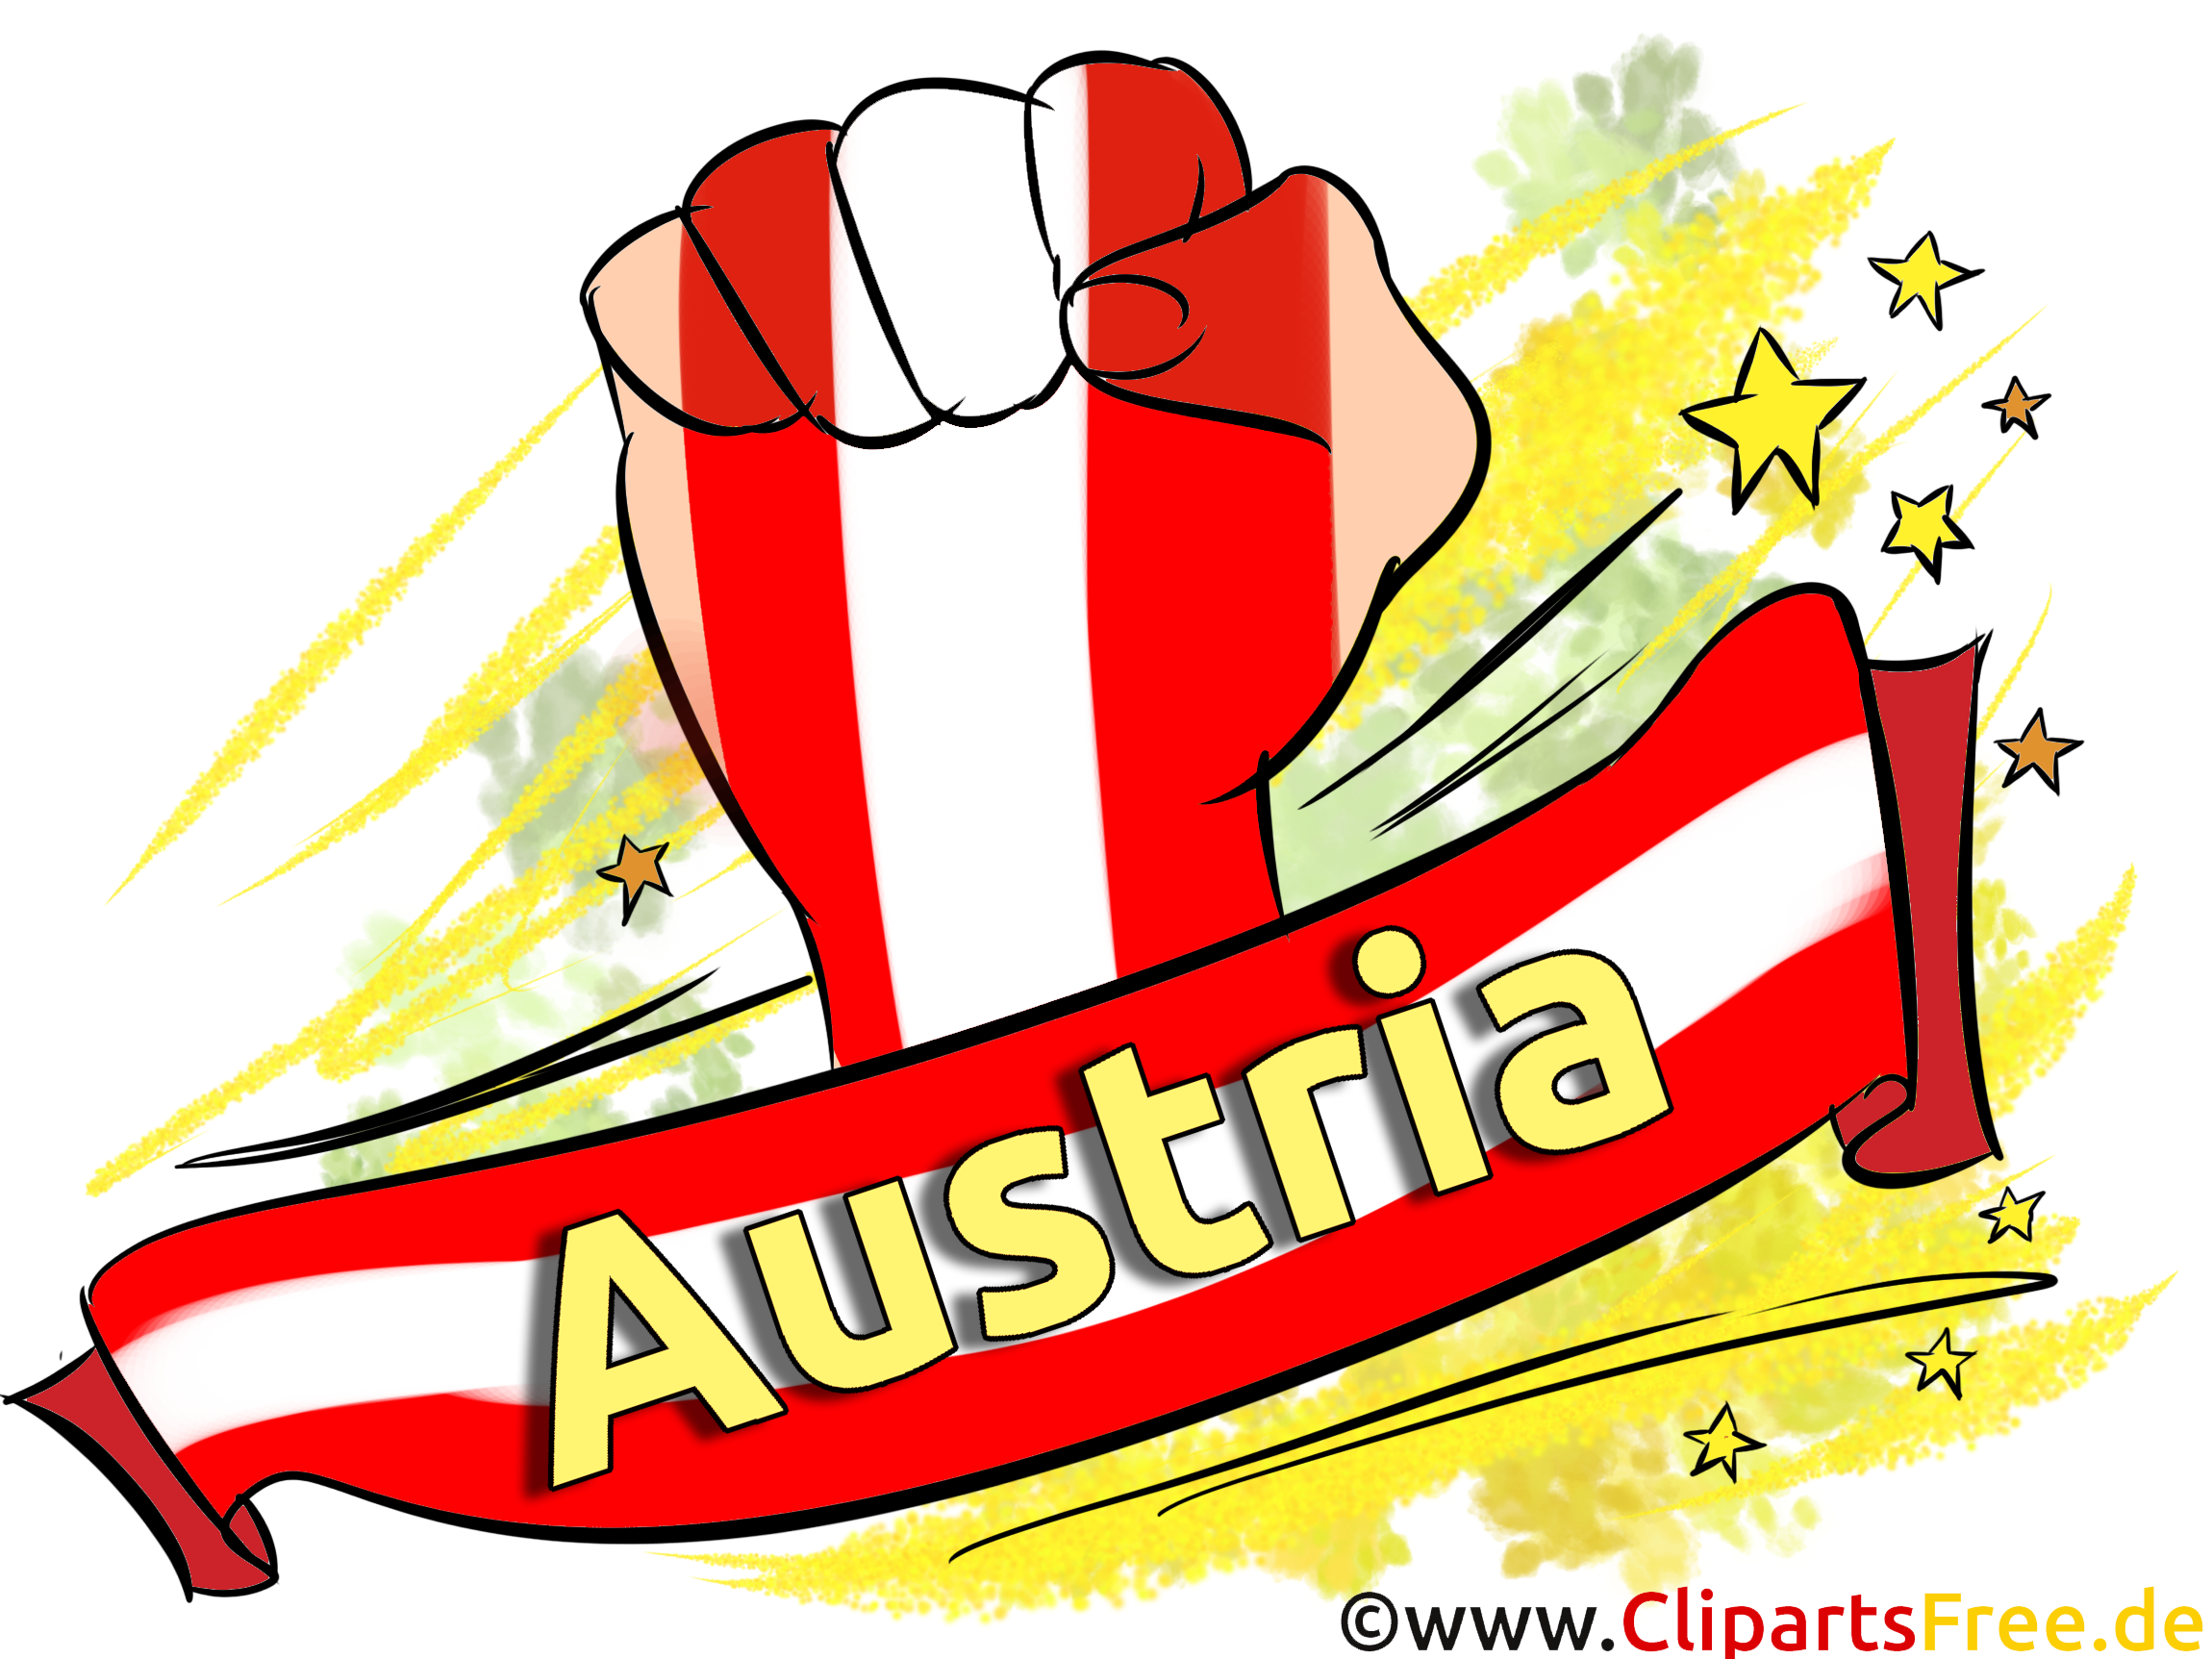 Clip art Images Football Autriche pour télécharger